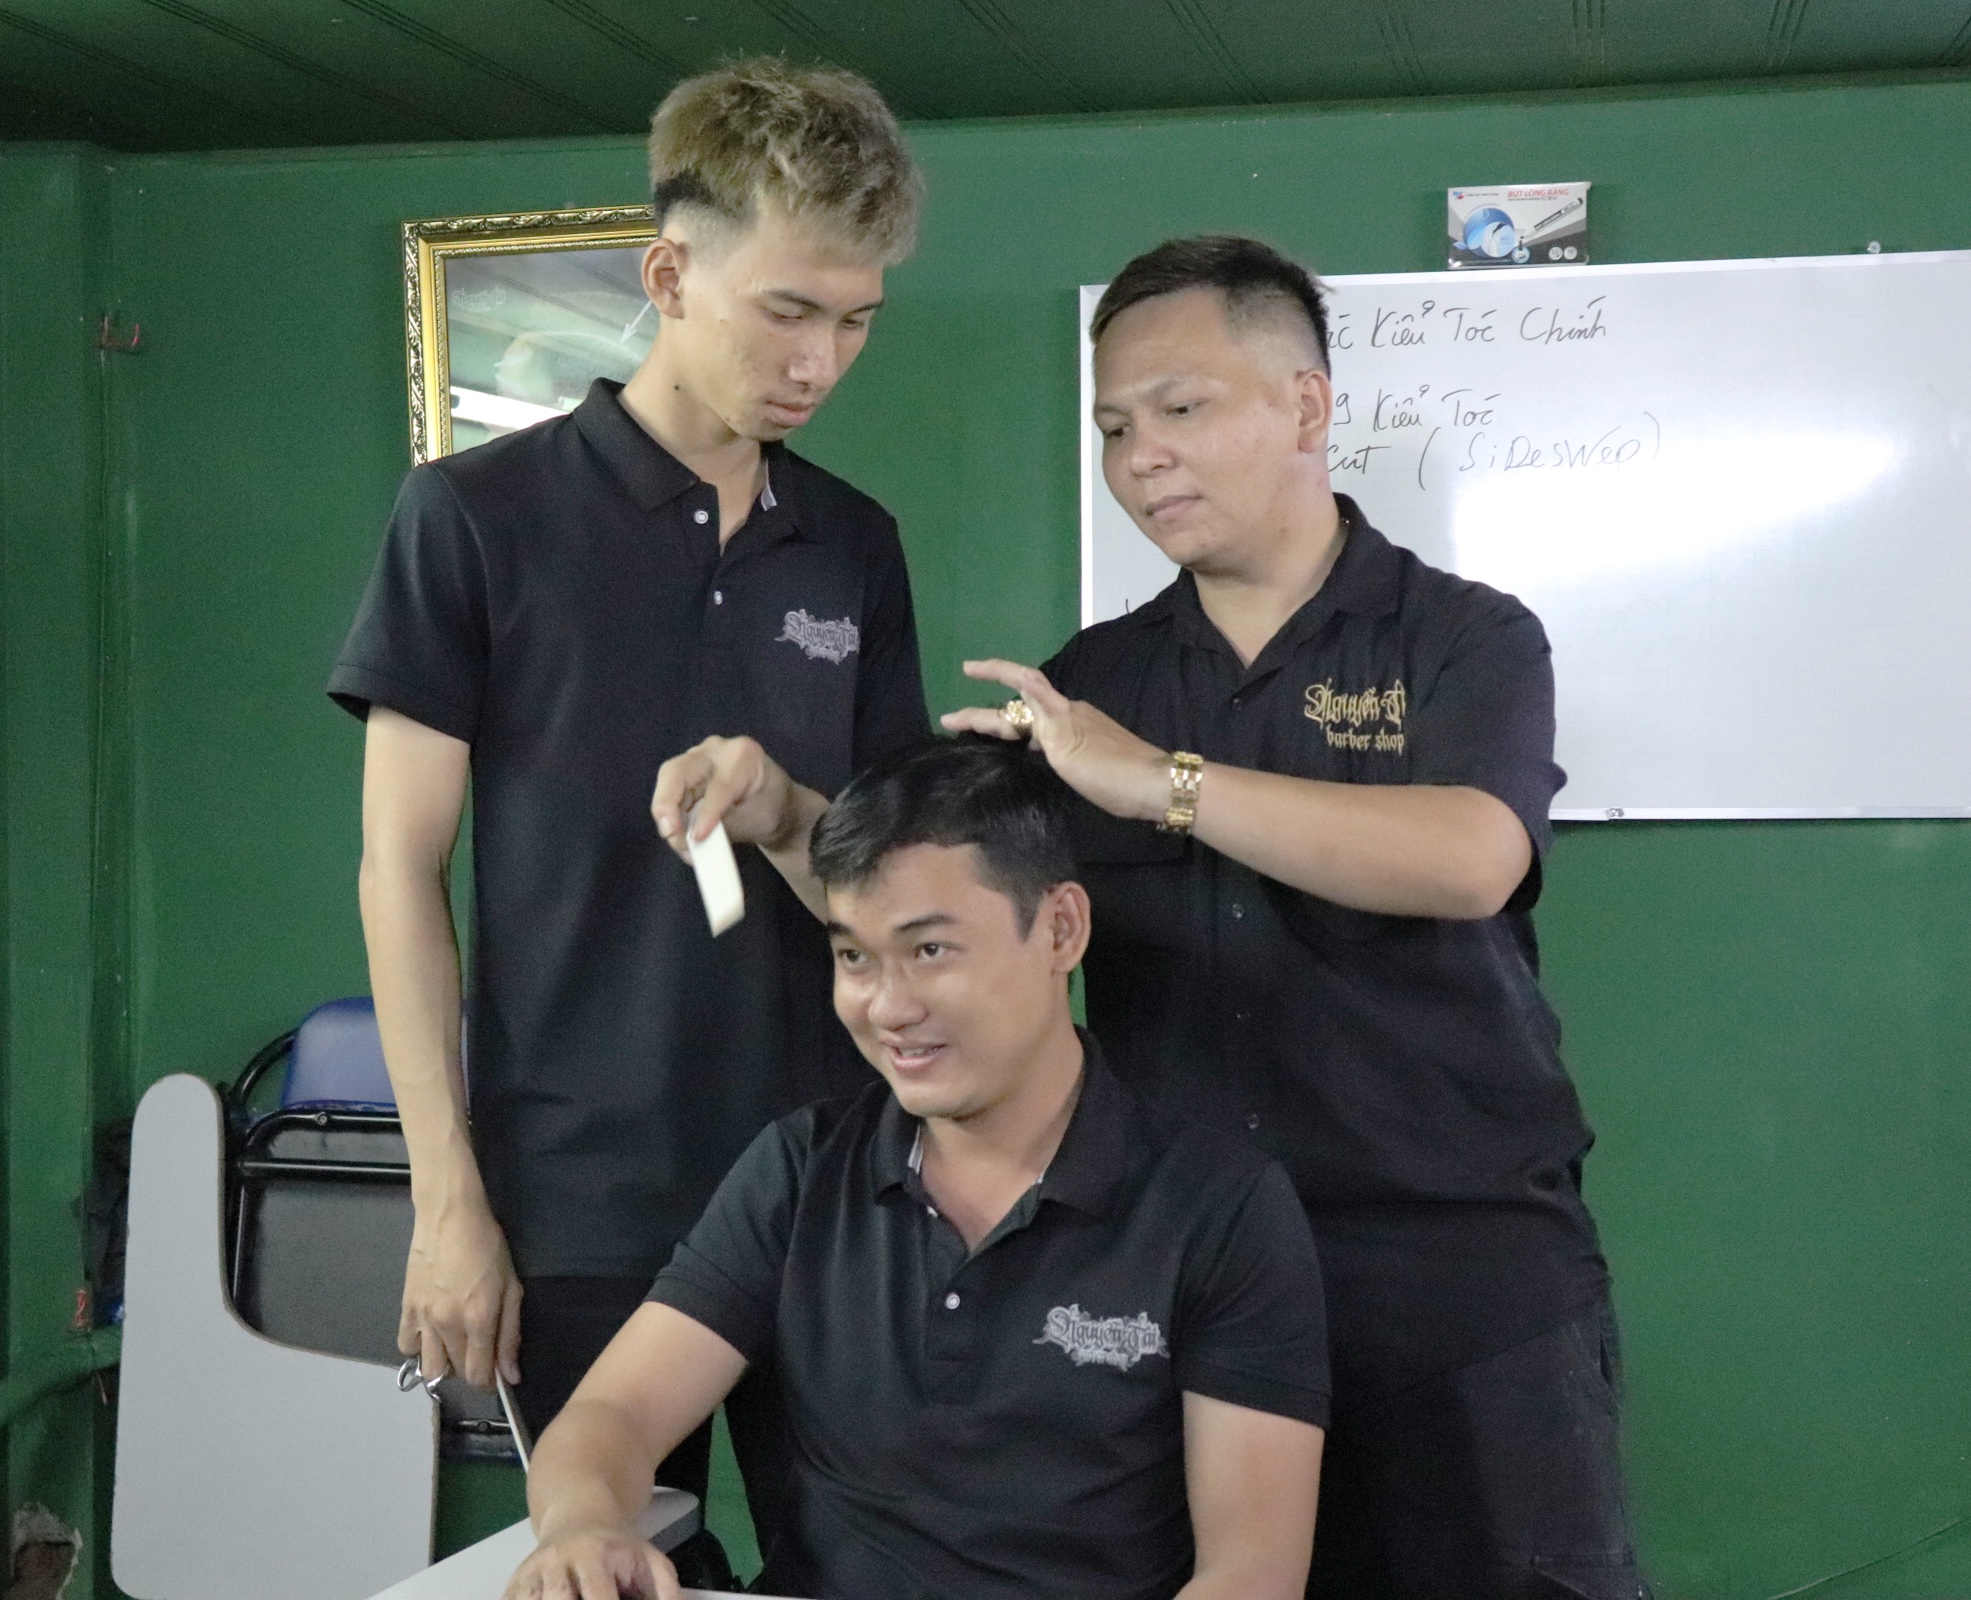 Bạn đang tò mò về cách cắt tóc mái bay đẹp như sao Hàn? Hãy xem hình ảnh dạy cắt tóc mái bay của chúng tôi để học hỏi và thực hành. Chắc chắn bạn sẽ có được đôi tay khéo léo và tự tin với tóc mình tự cắt.